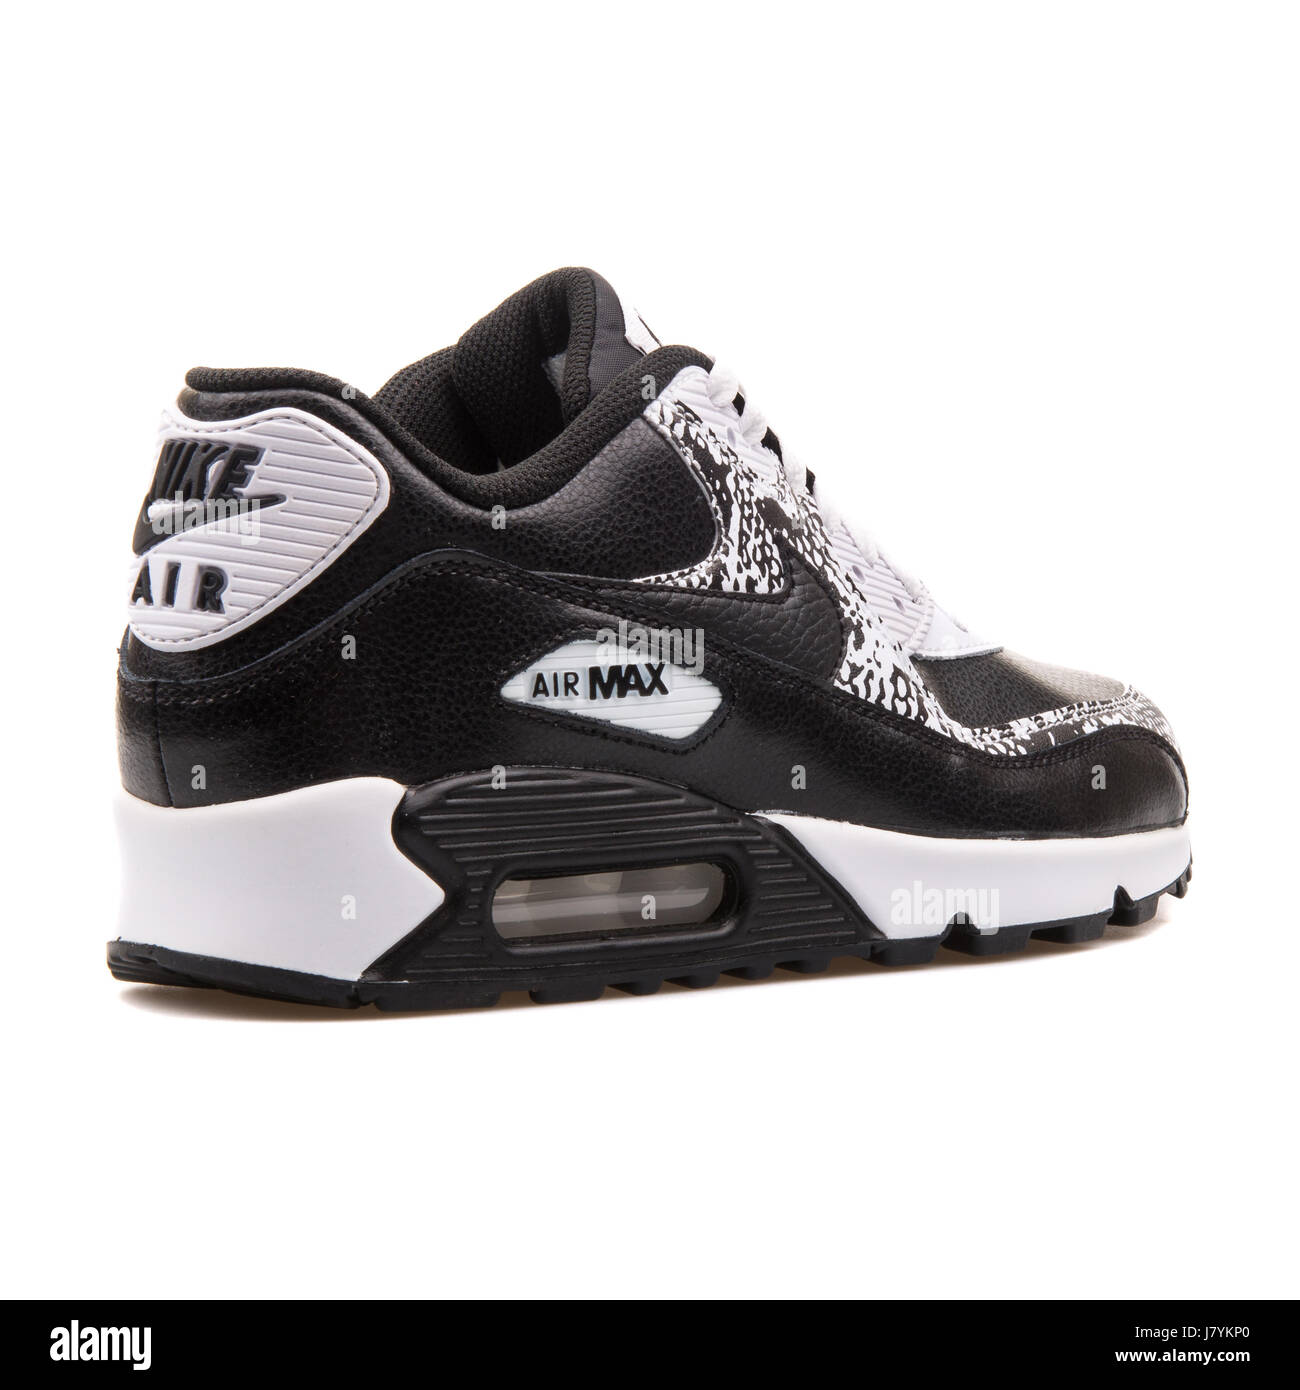 Nike Air Max 90 Premium LTR (GS) Les jeunes en noir et blanc Sneakers -  724871-001 Photo Stock - Alamy